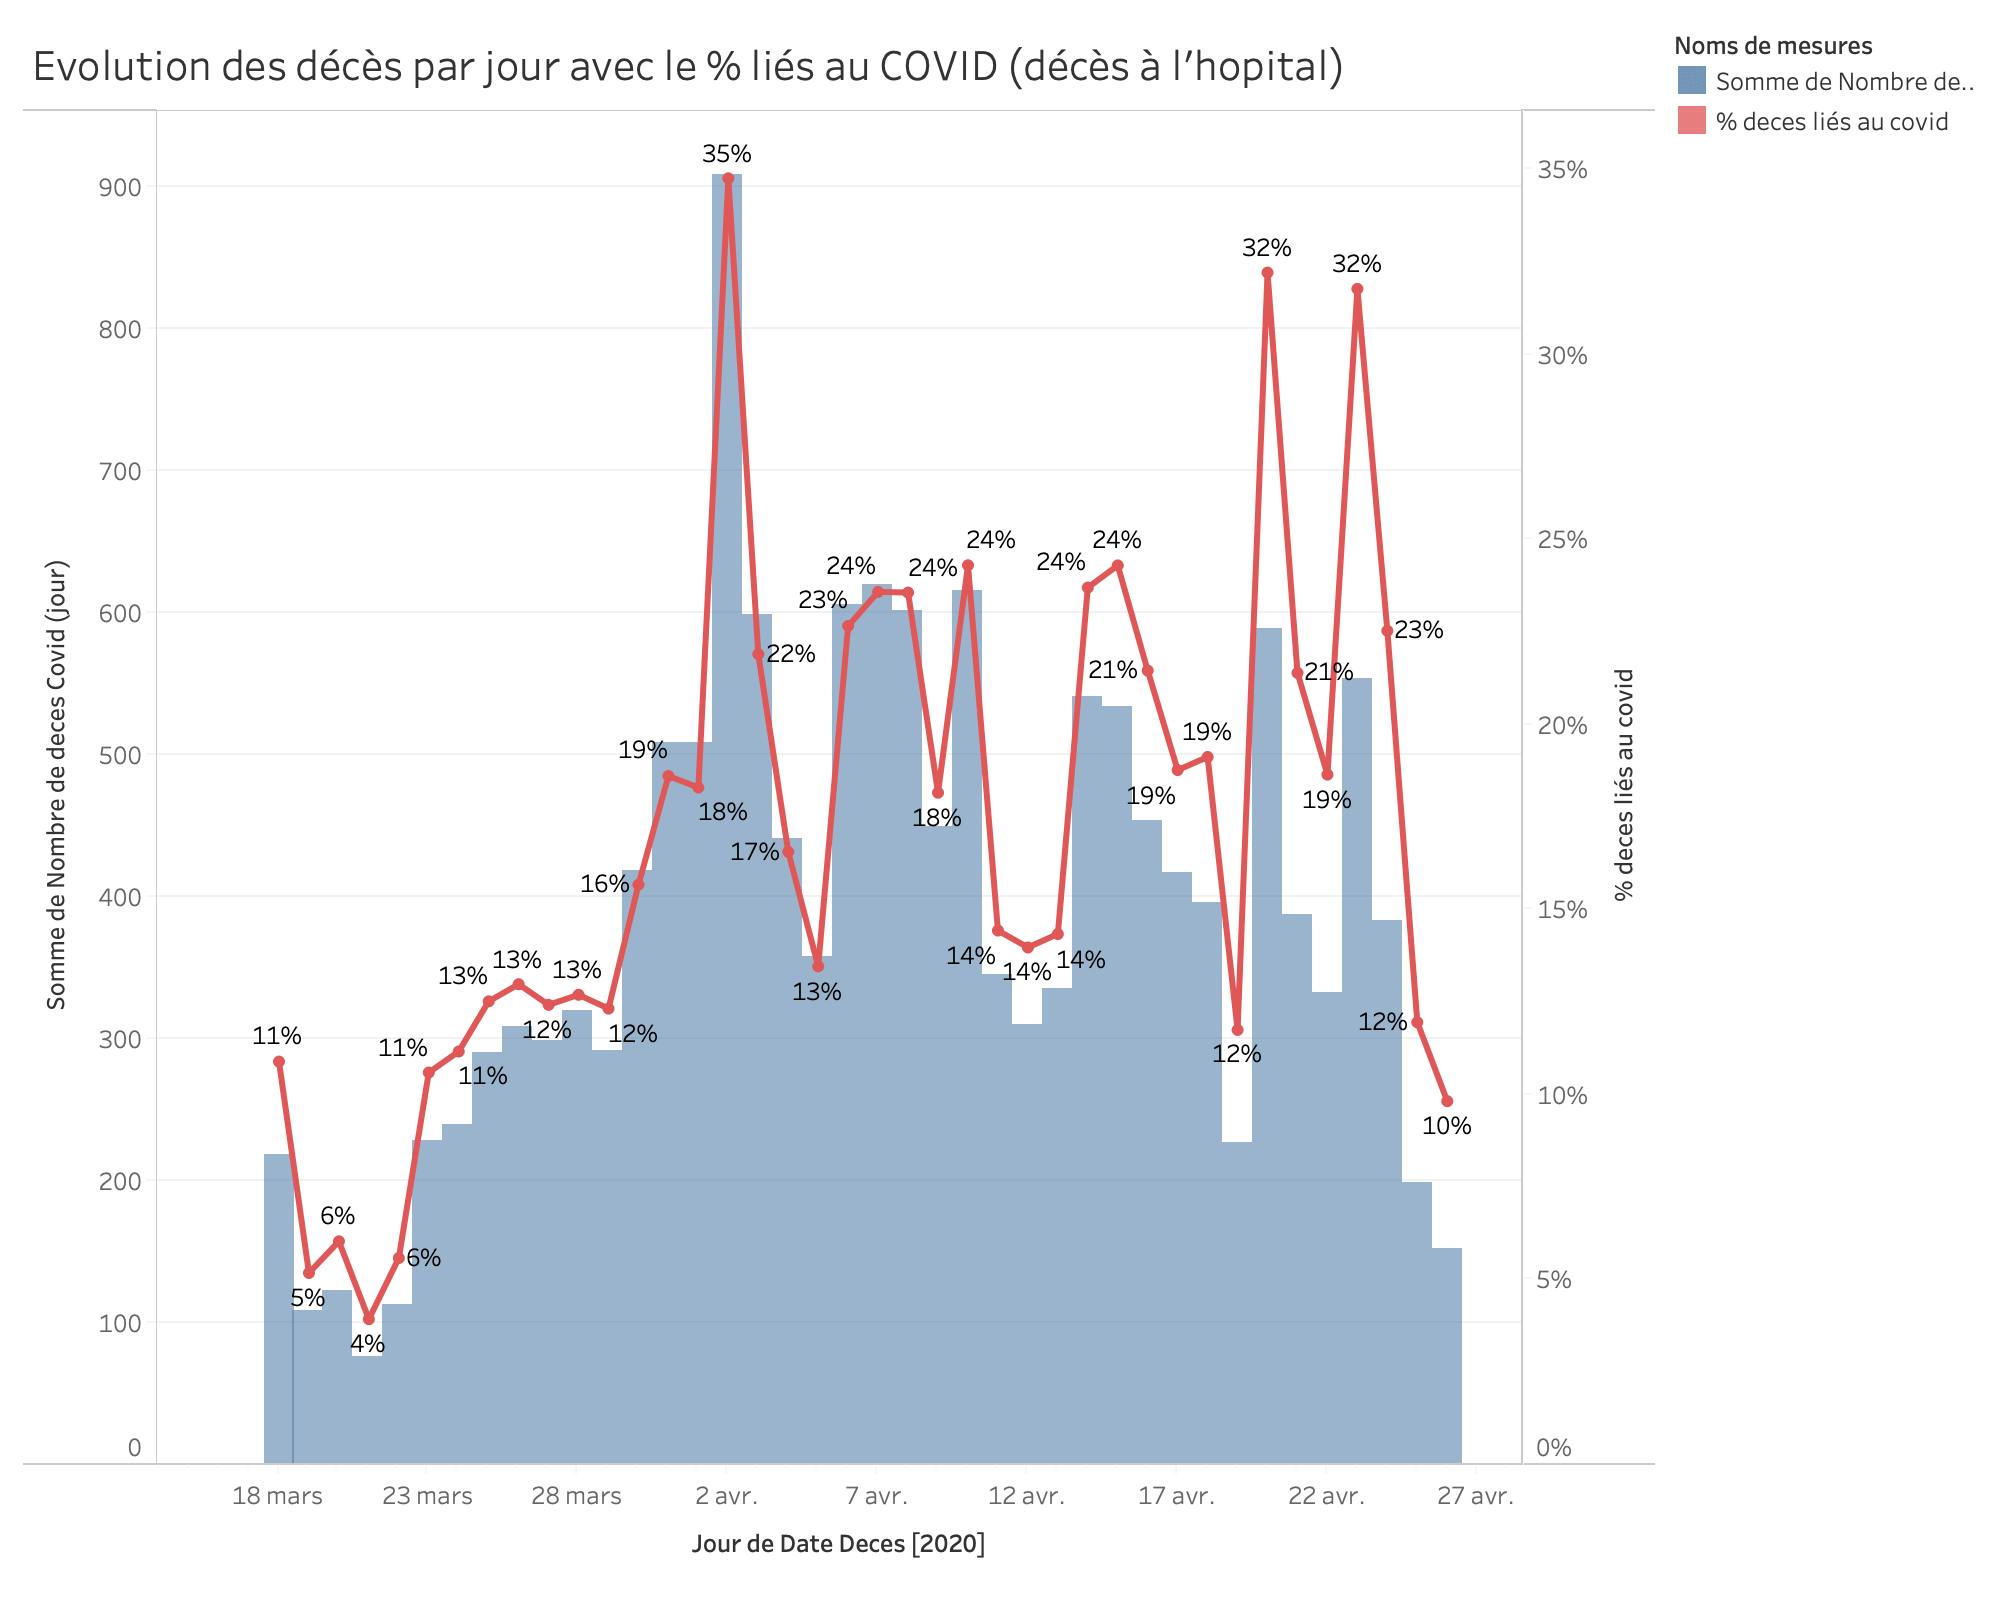 Evolution des décès par jour avec le % liés au COVID (décès à l'hopital) du 1 mars au 27 avril 2020